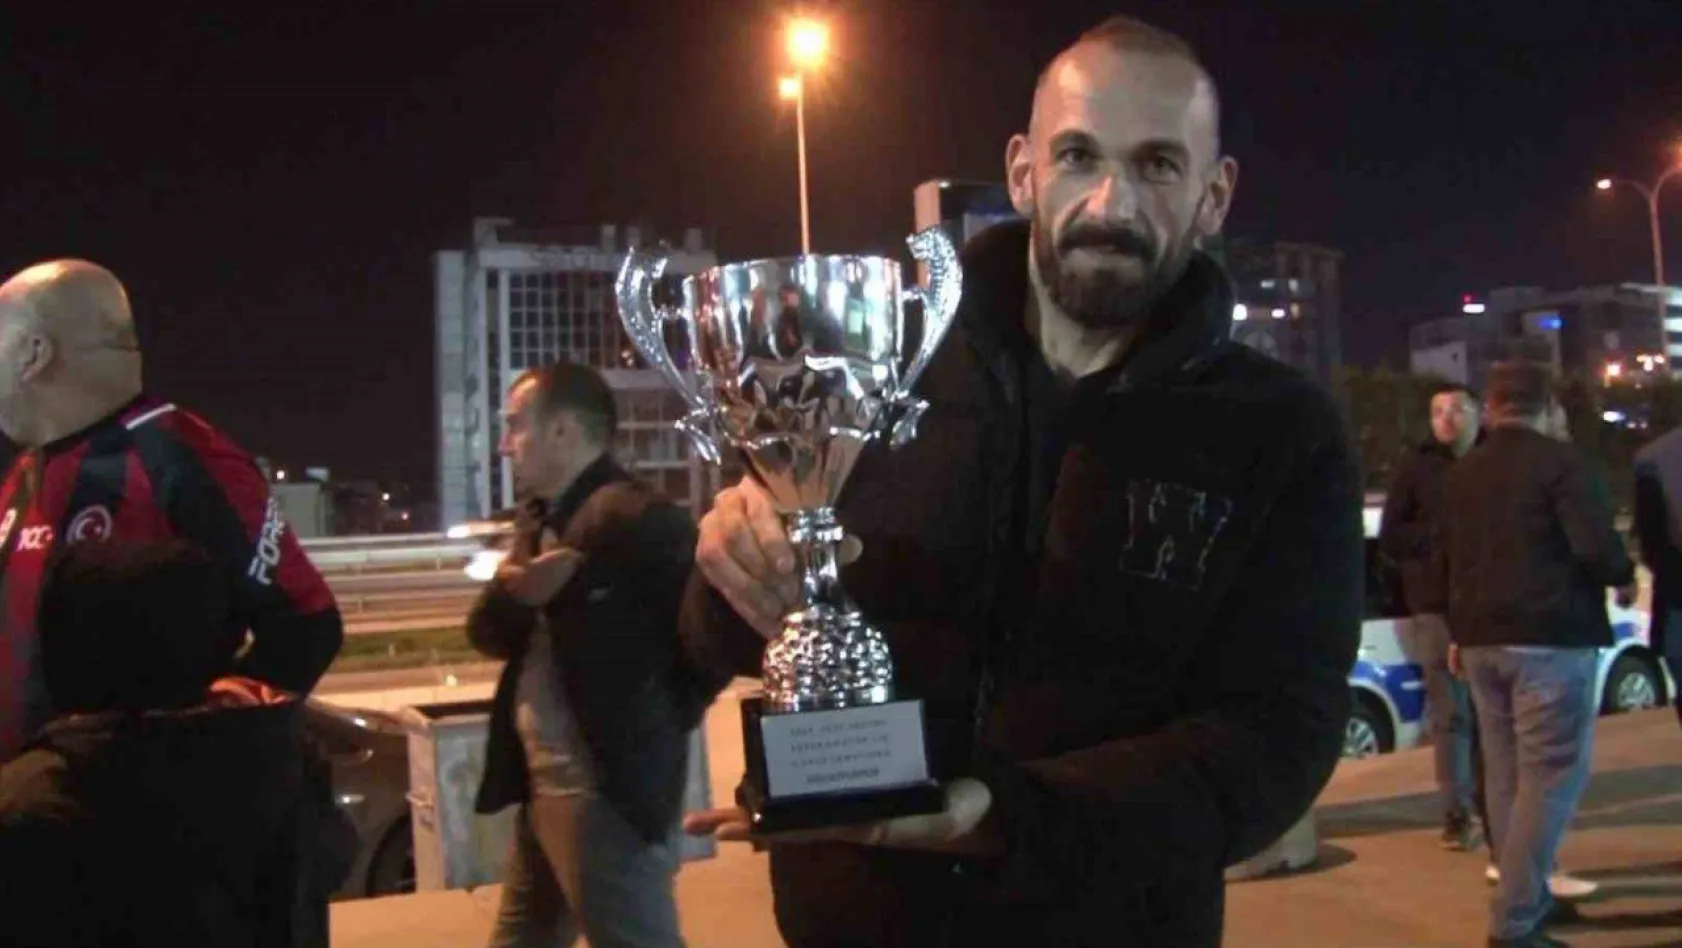 Süper Amatör Lig'de grup şampiyonu olan Gülsuyuspor'da taraftarlardan şampiyonluk kutlaması